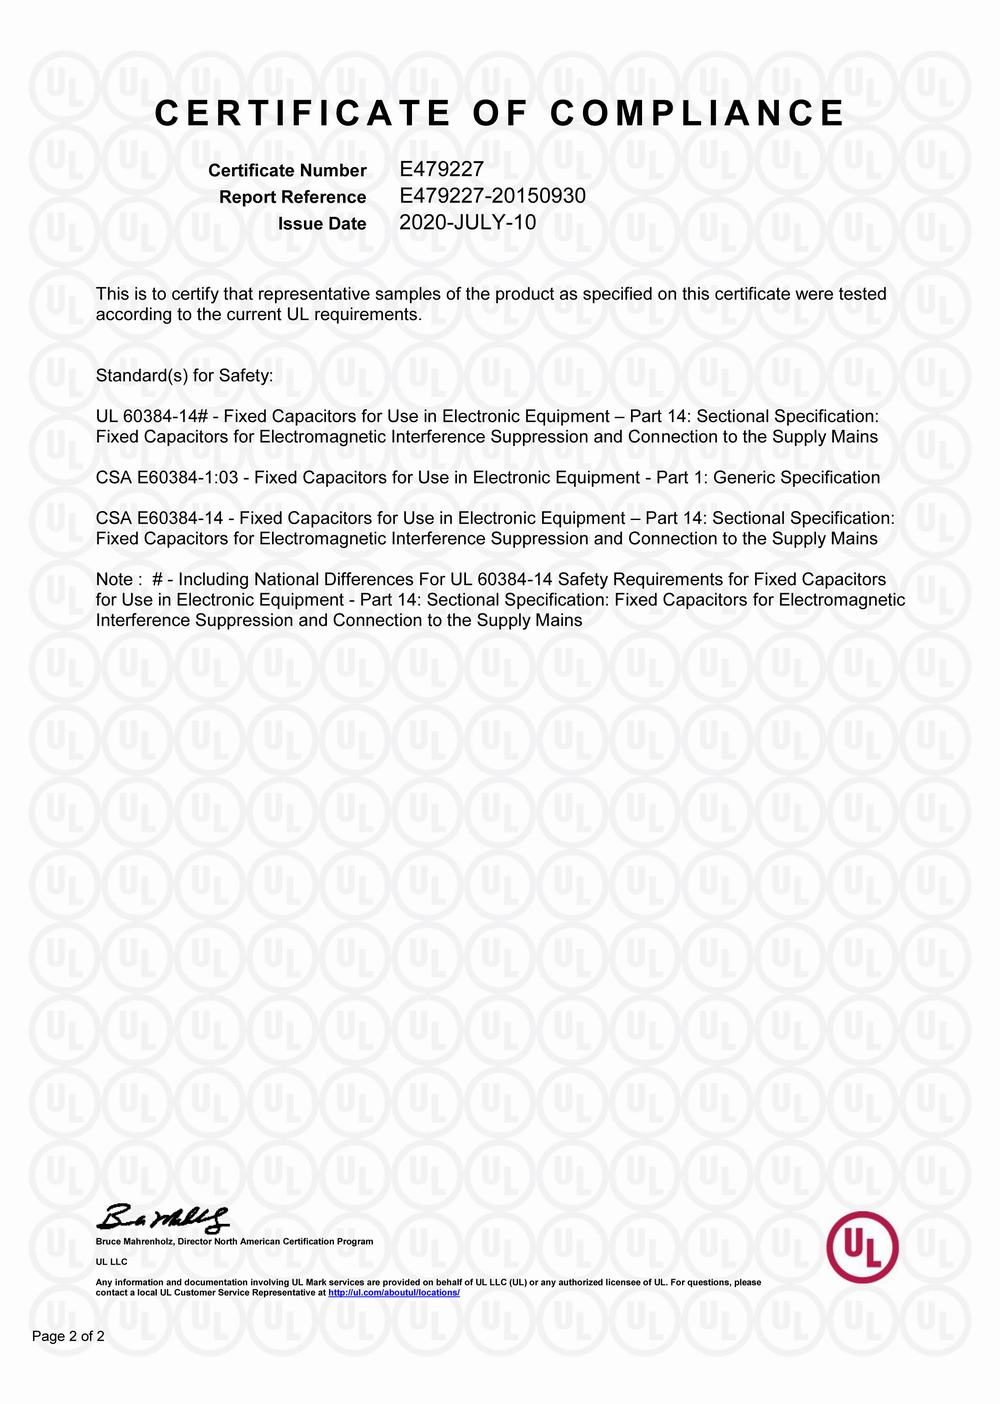 Thermal NTC-TUV certificate 1